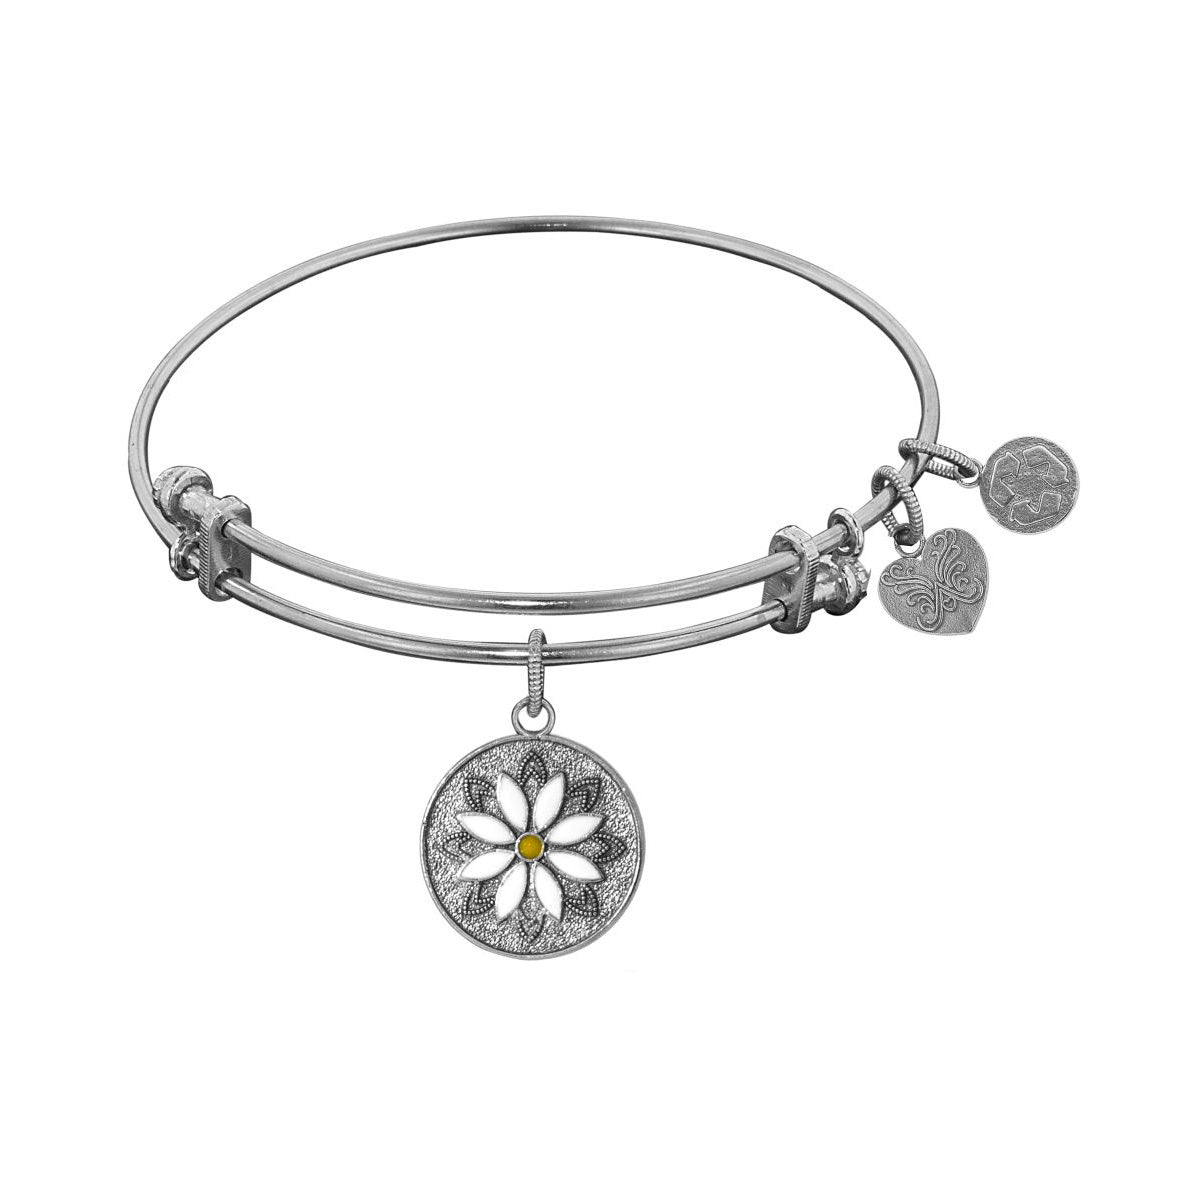 Stipple Finish Brass Daisy Flower Angelica Bangle Bracelet, 7.25" fine designer jewelry for men and women